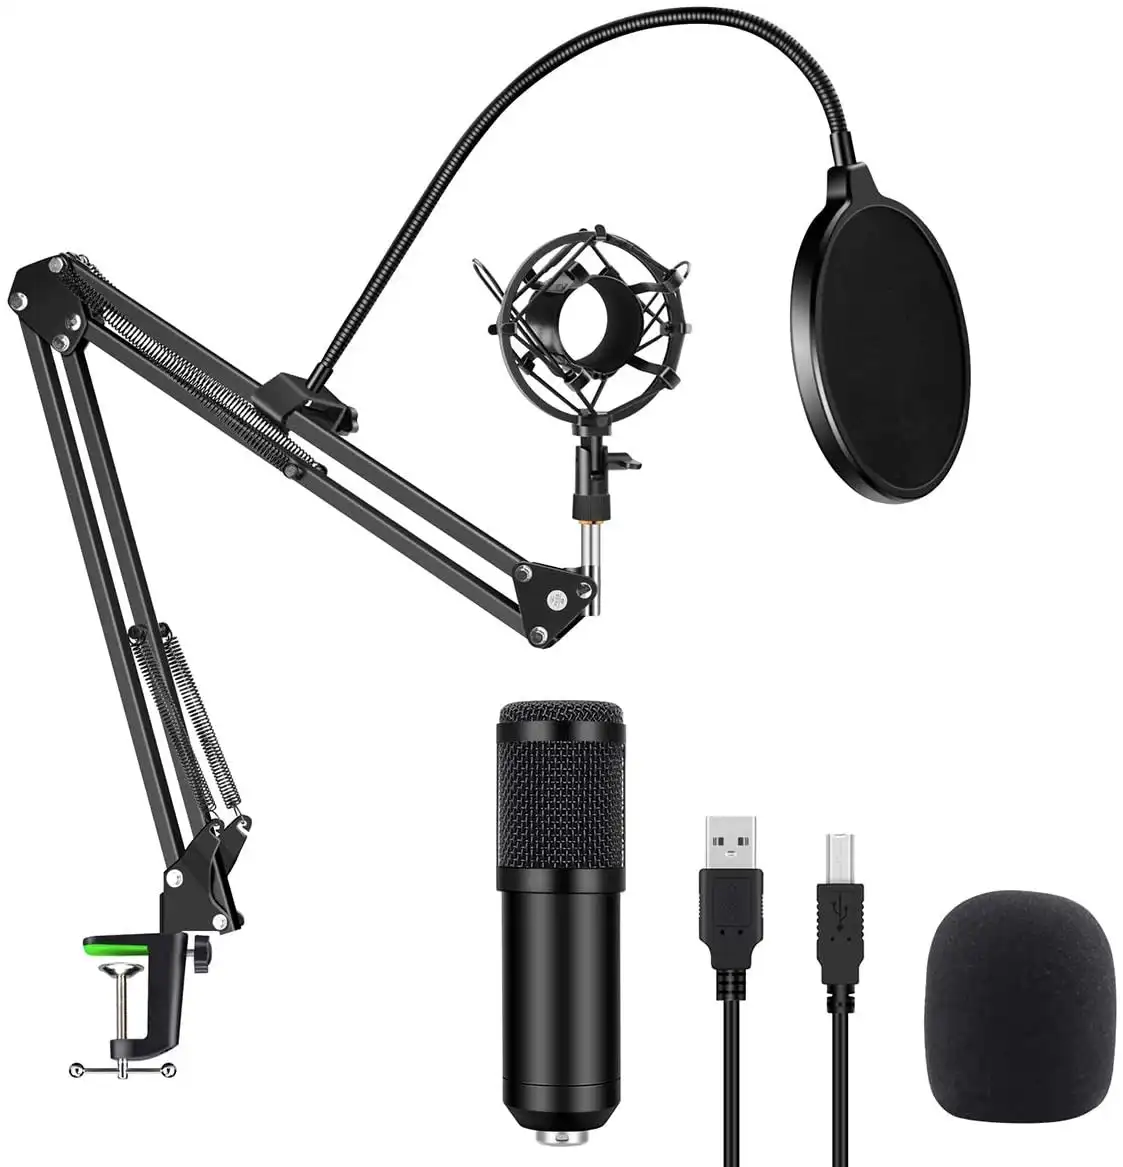 Microfone usb bm800 preto, condensador, com filtro, tesoura, para laptop, smartphone, placa de som, livre